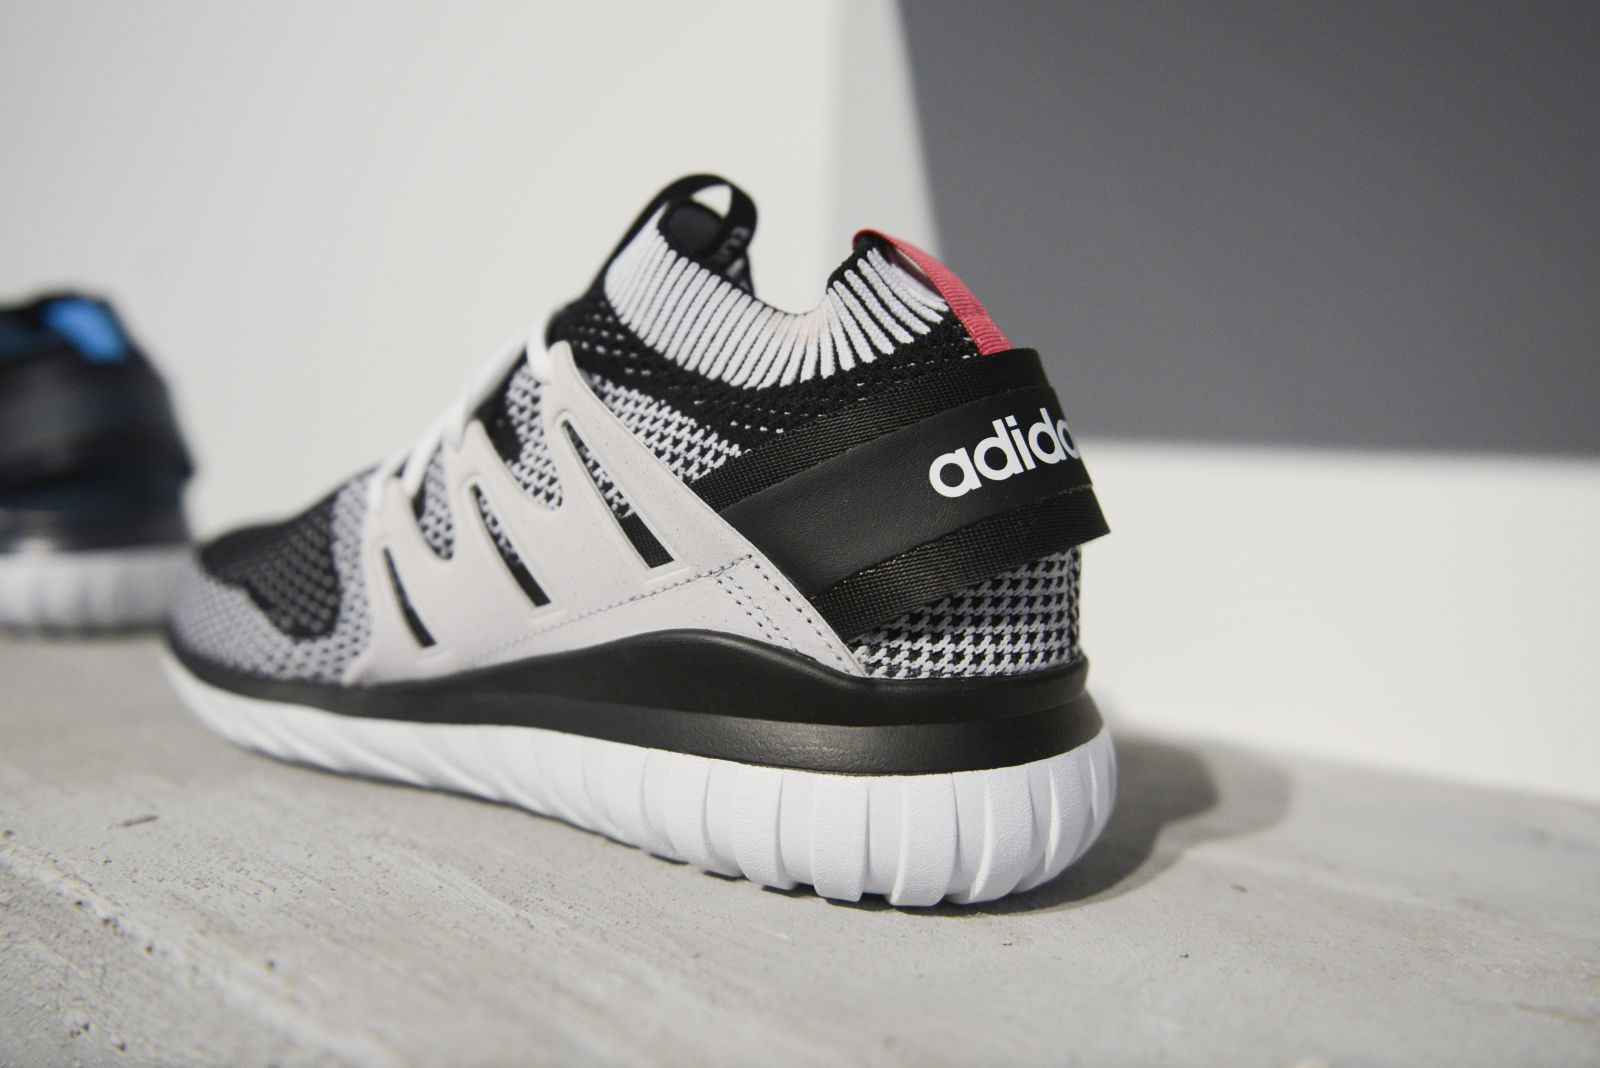 Adidas Kids 'Tubular Radial Sneakers Barneys New York